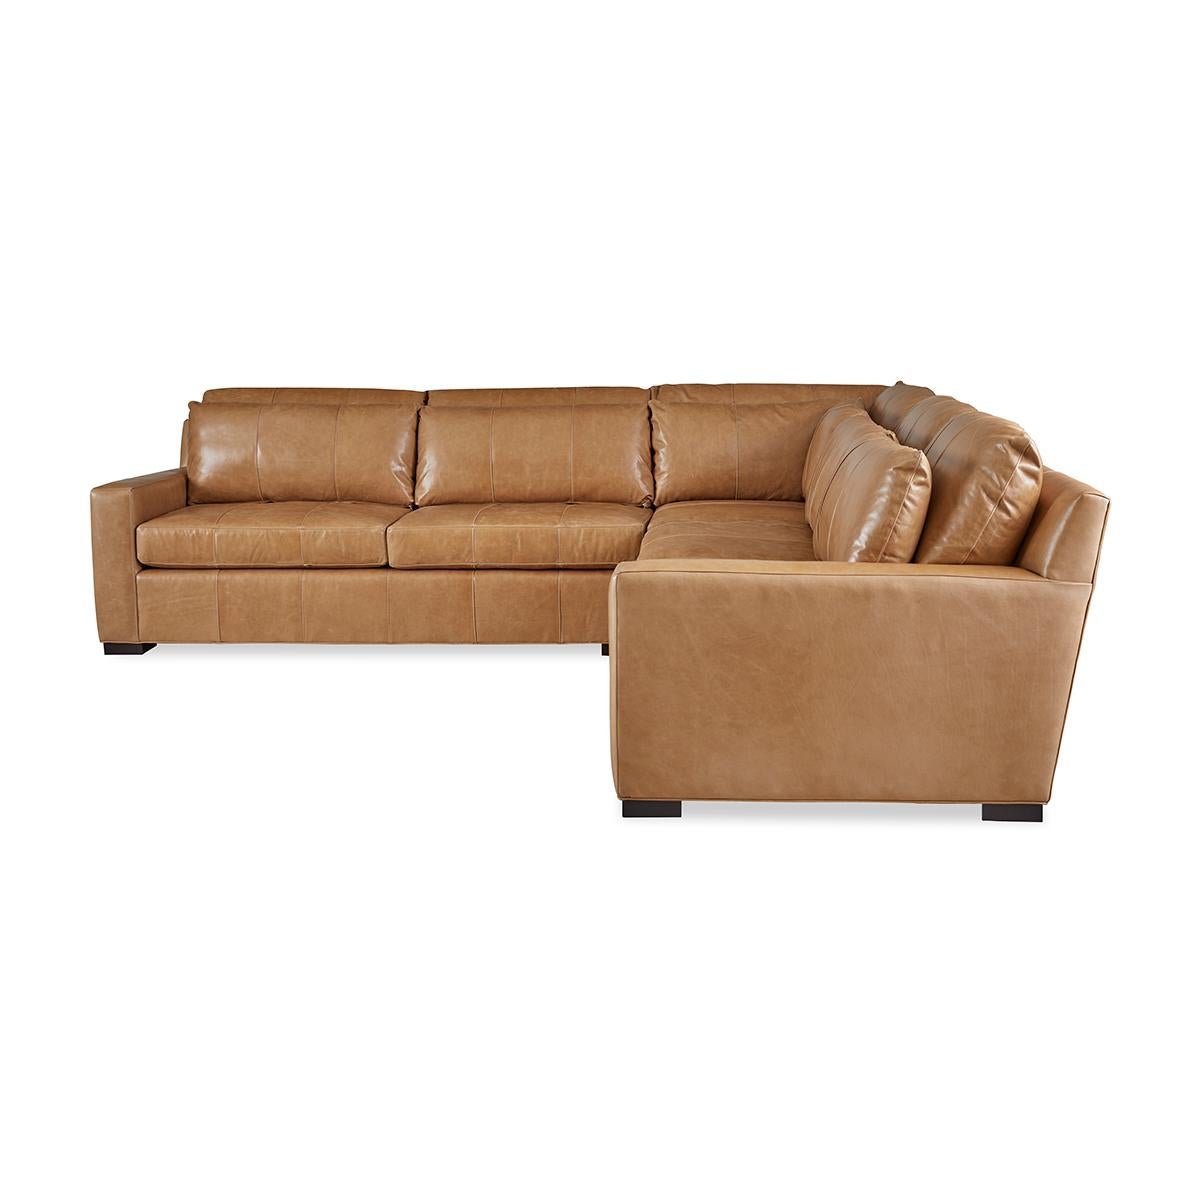 Modernes ledergepolstertes Sofa mit kühnen modernen Linien und auf kühnen quadratischen Blockfüßen. Lange lose Kissenrücken mit zwei langen Komfort-Daunen-Sitzpolstern.

Vollständig in den USA hergestellt, mit traditioneller 8-fach handgeknüpfter